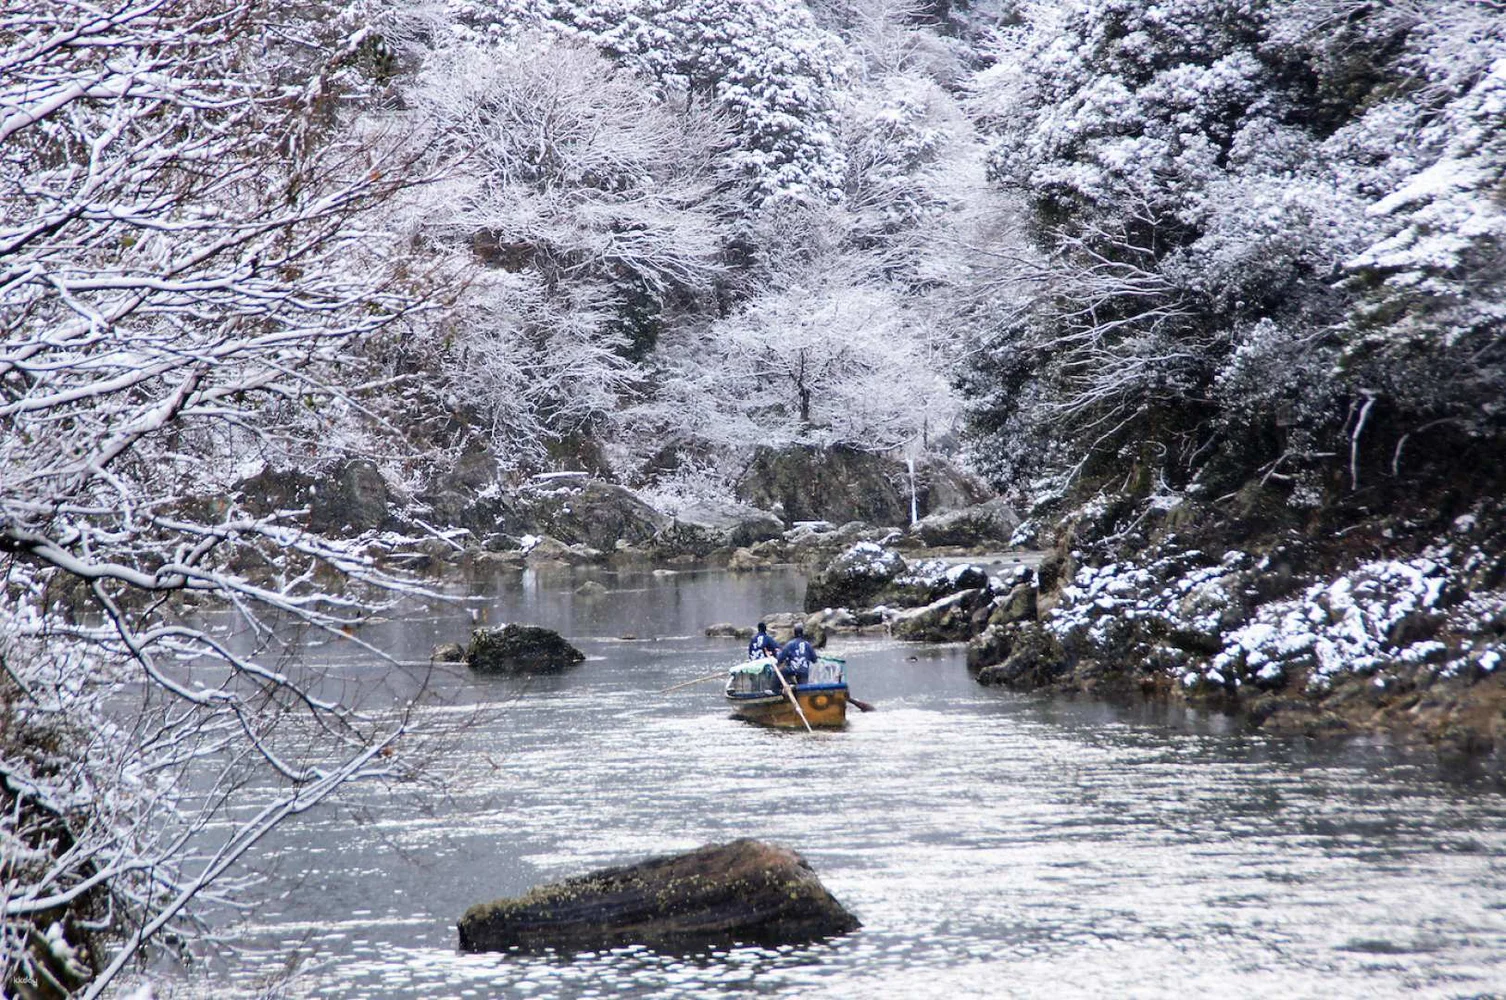 Arashiyama Boat Ride E-Ticket for Kyoto's Hozu River Valley